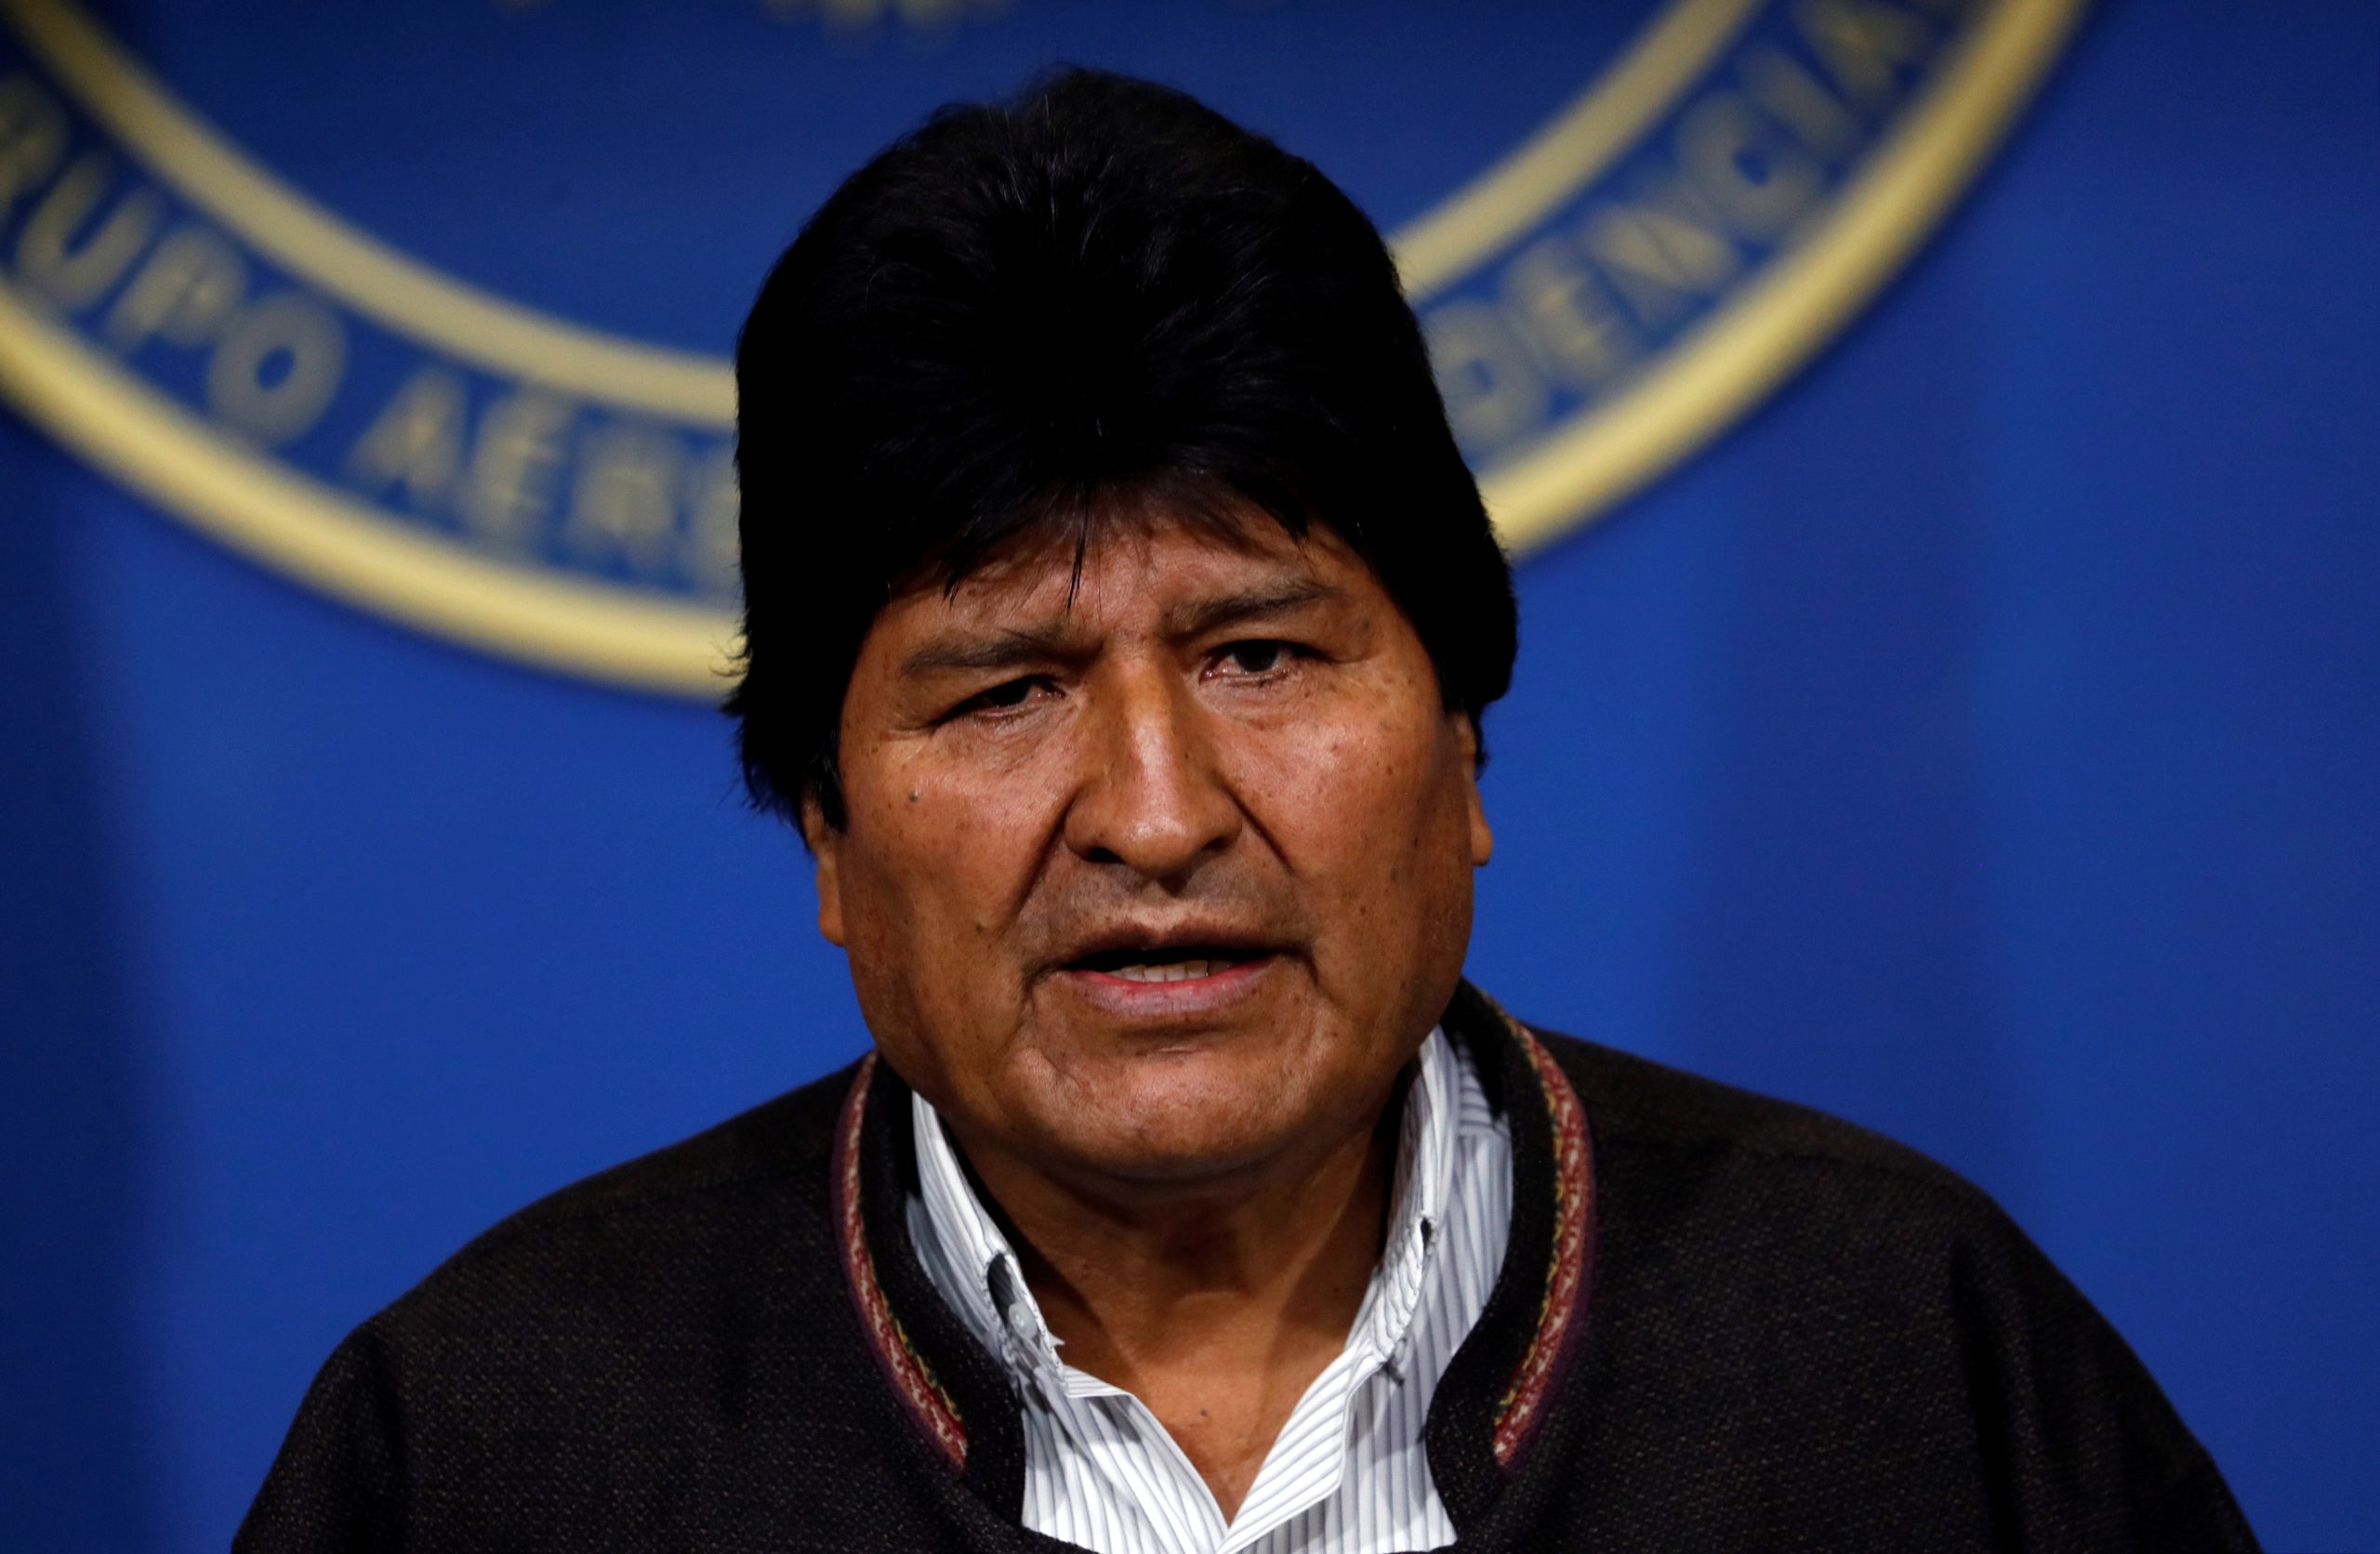 Βολιβία: Νέα διαταγή σύλληψης του Εβο Μοράλες – Γιατί τον κατηγορούν;